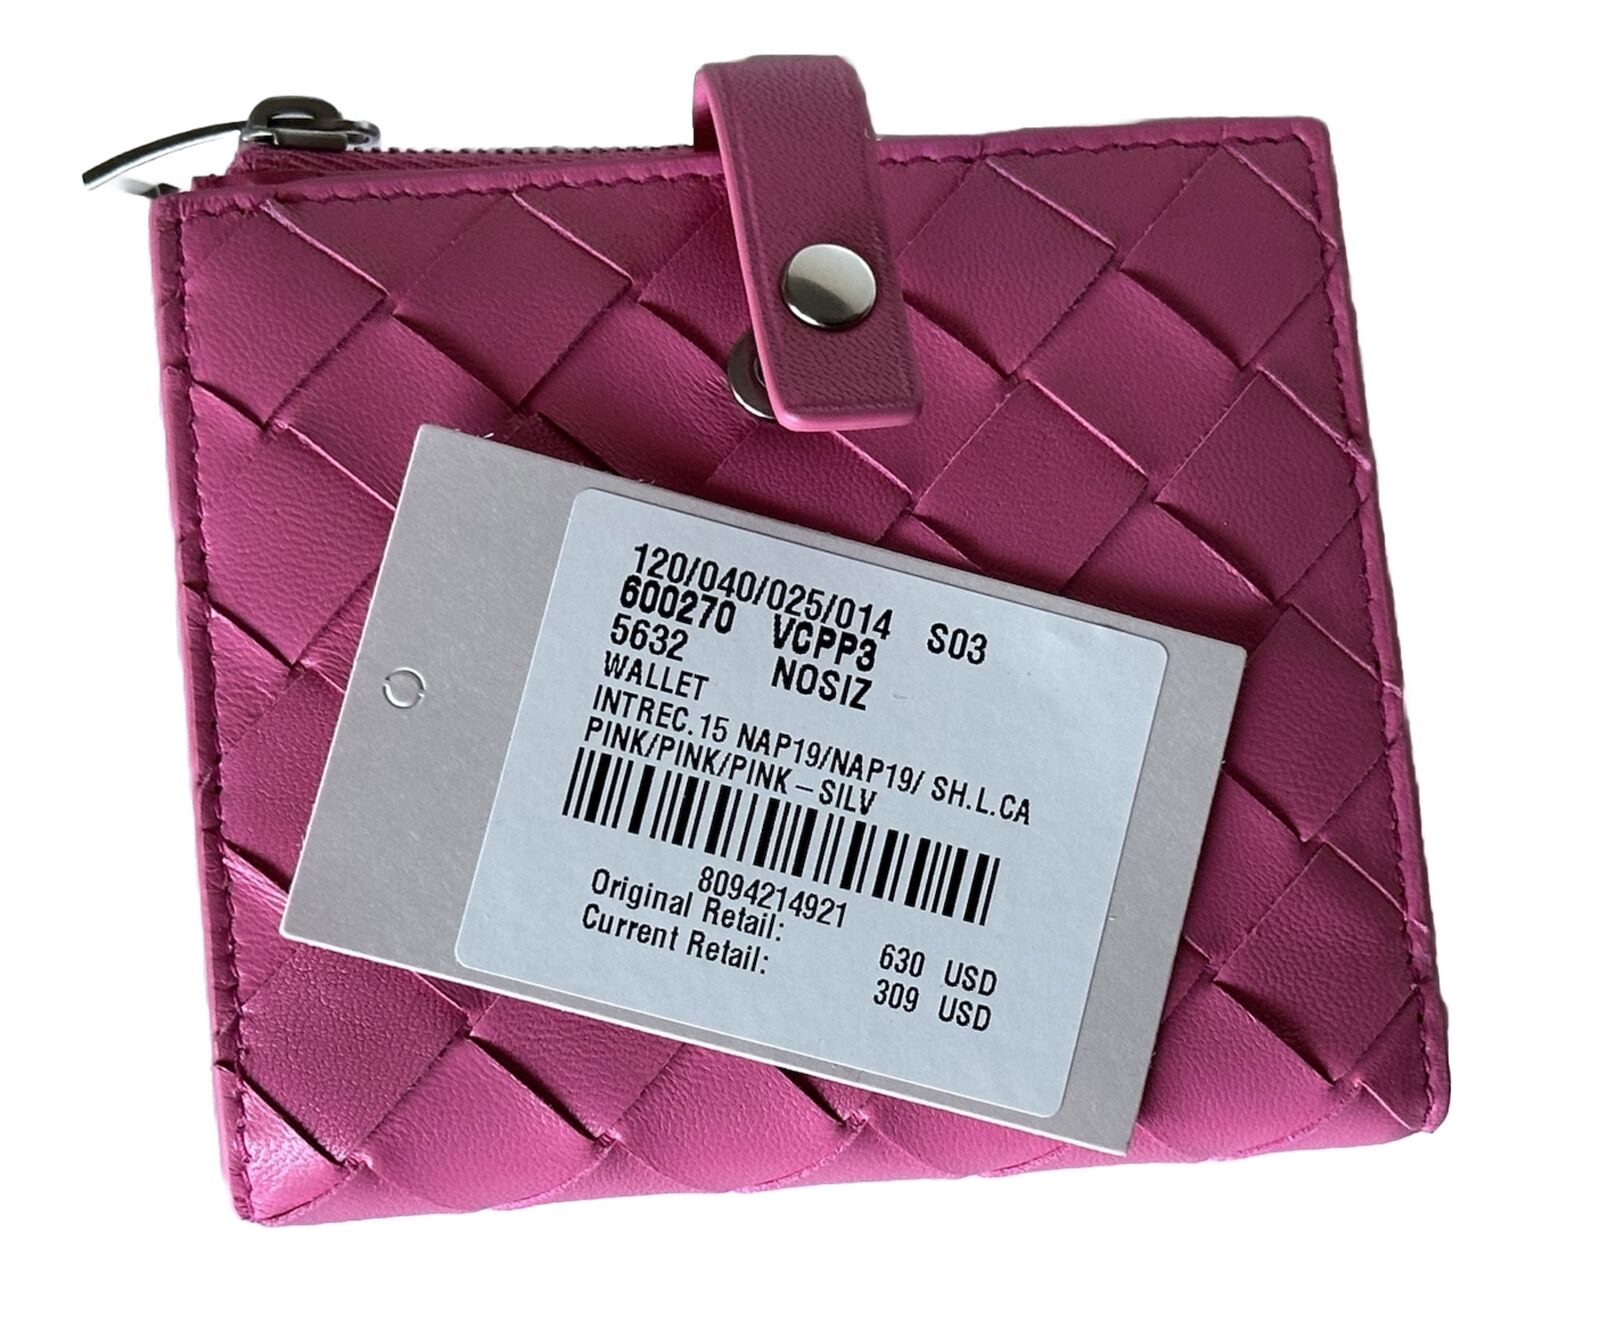 Neu mit Etikett: 630 $ Bottega Veneta Intrecciato Nappaleder-Geldbörse mit Reißverschluss, Pink IT 600270 